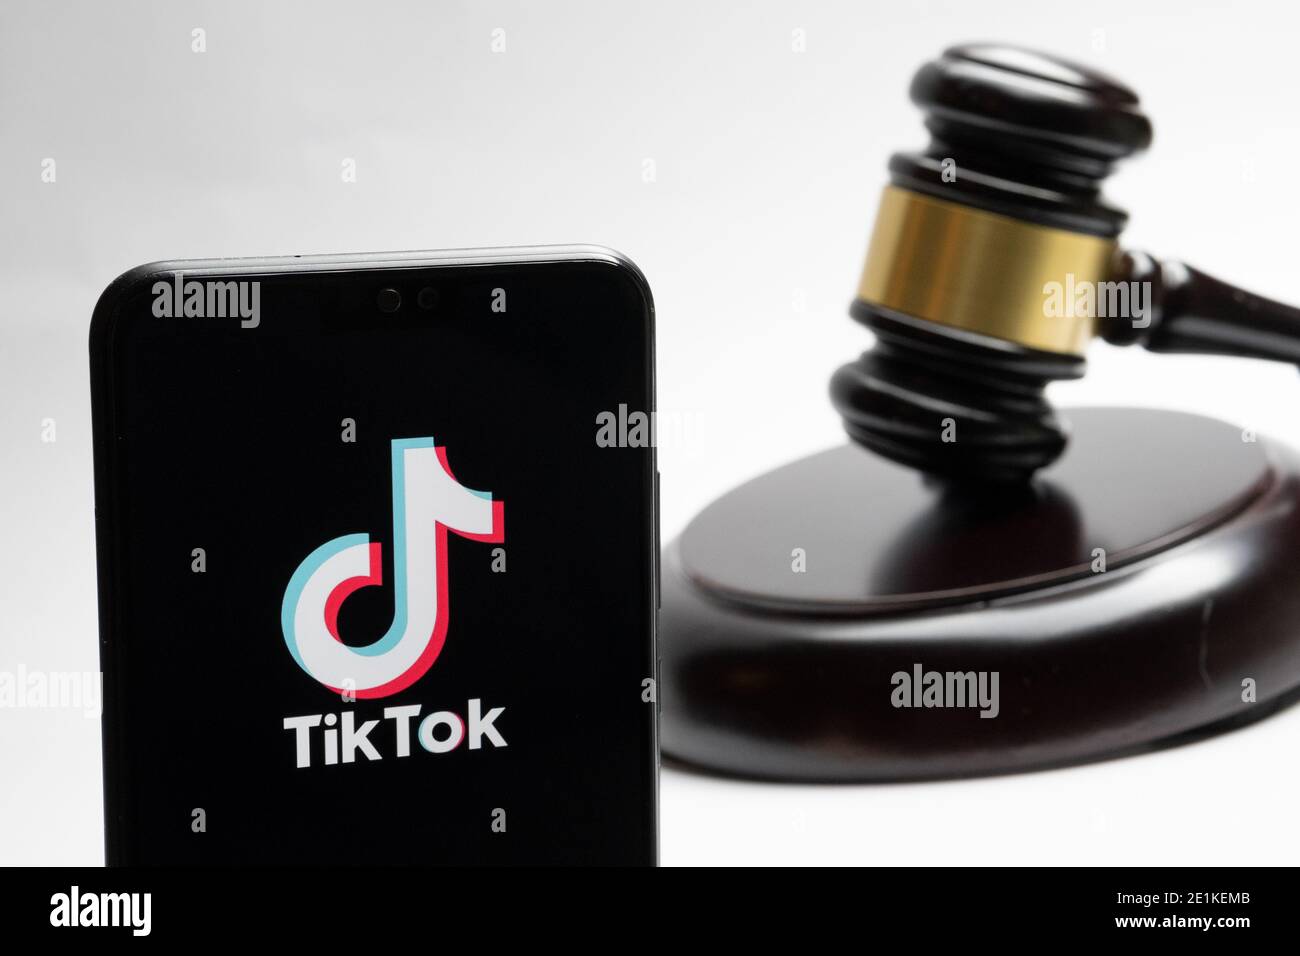 Stafford, Reino Unido - 7 de enero de 2021: El logo de Tiktok visto en el teléfono inteligente y un juez gavel borroso en el fondo. Concepto. Foto de stock